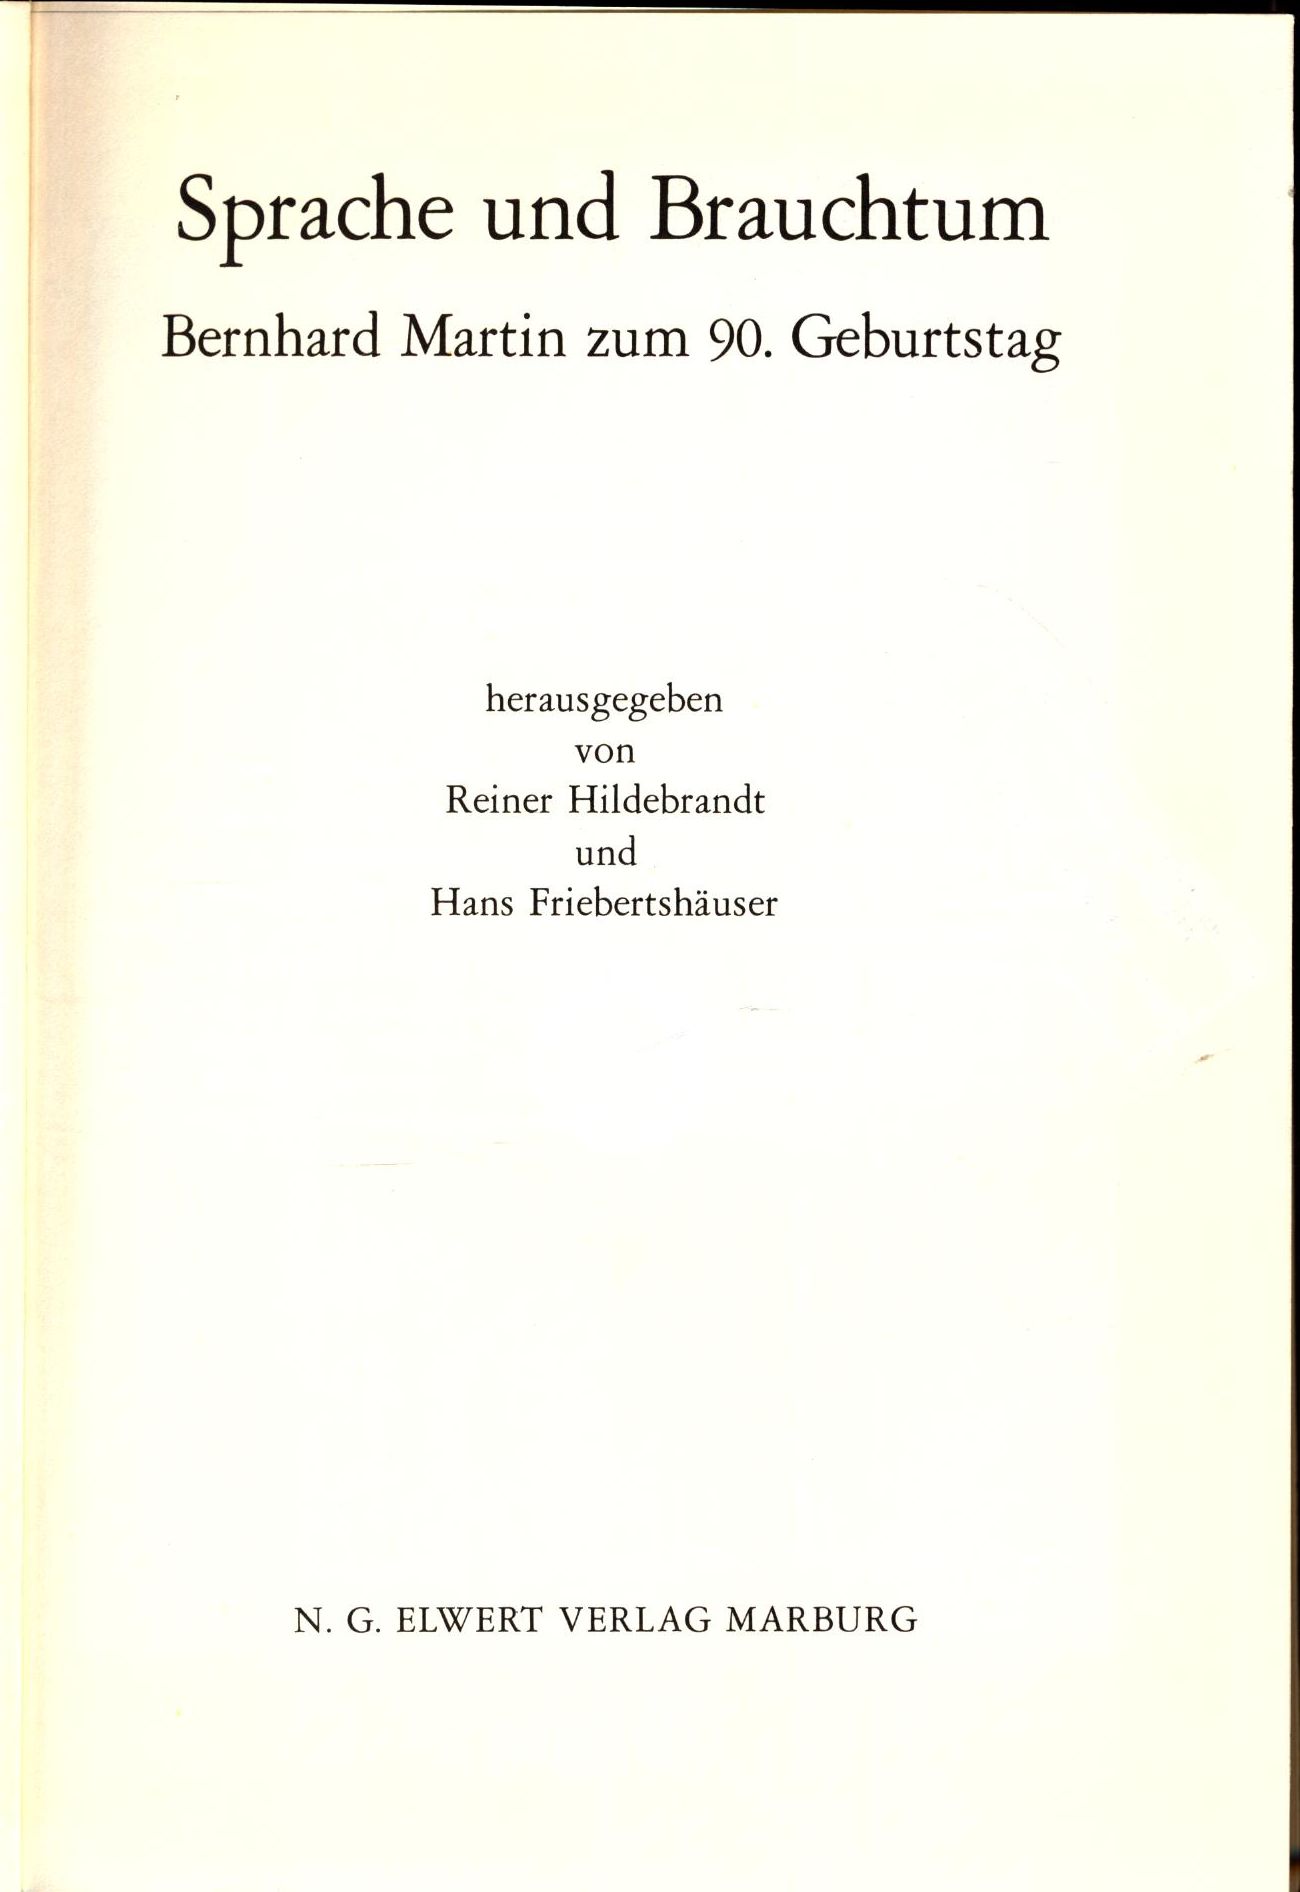 Sprache und Brauchtum Bernhard Martin zum 90. Geburtstag Deutsche Dialektographie ; Band 100 - Hildebrandt, Reiner, Hans Friebertshäuser  und Bernhard Martin